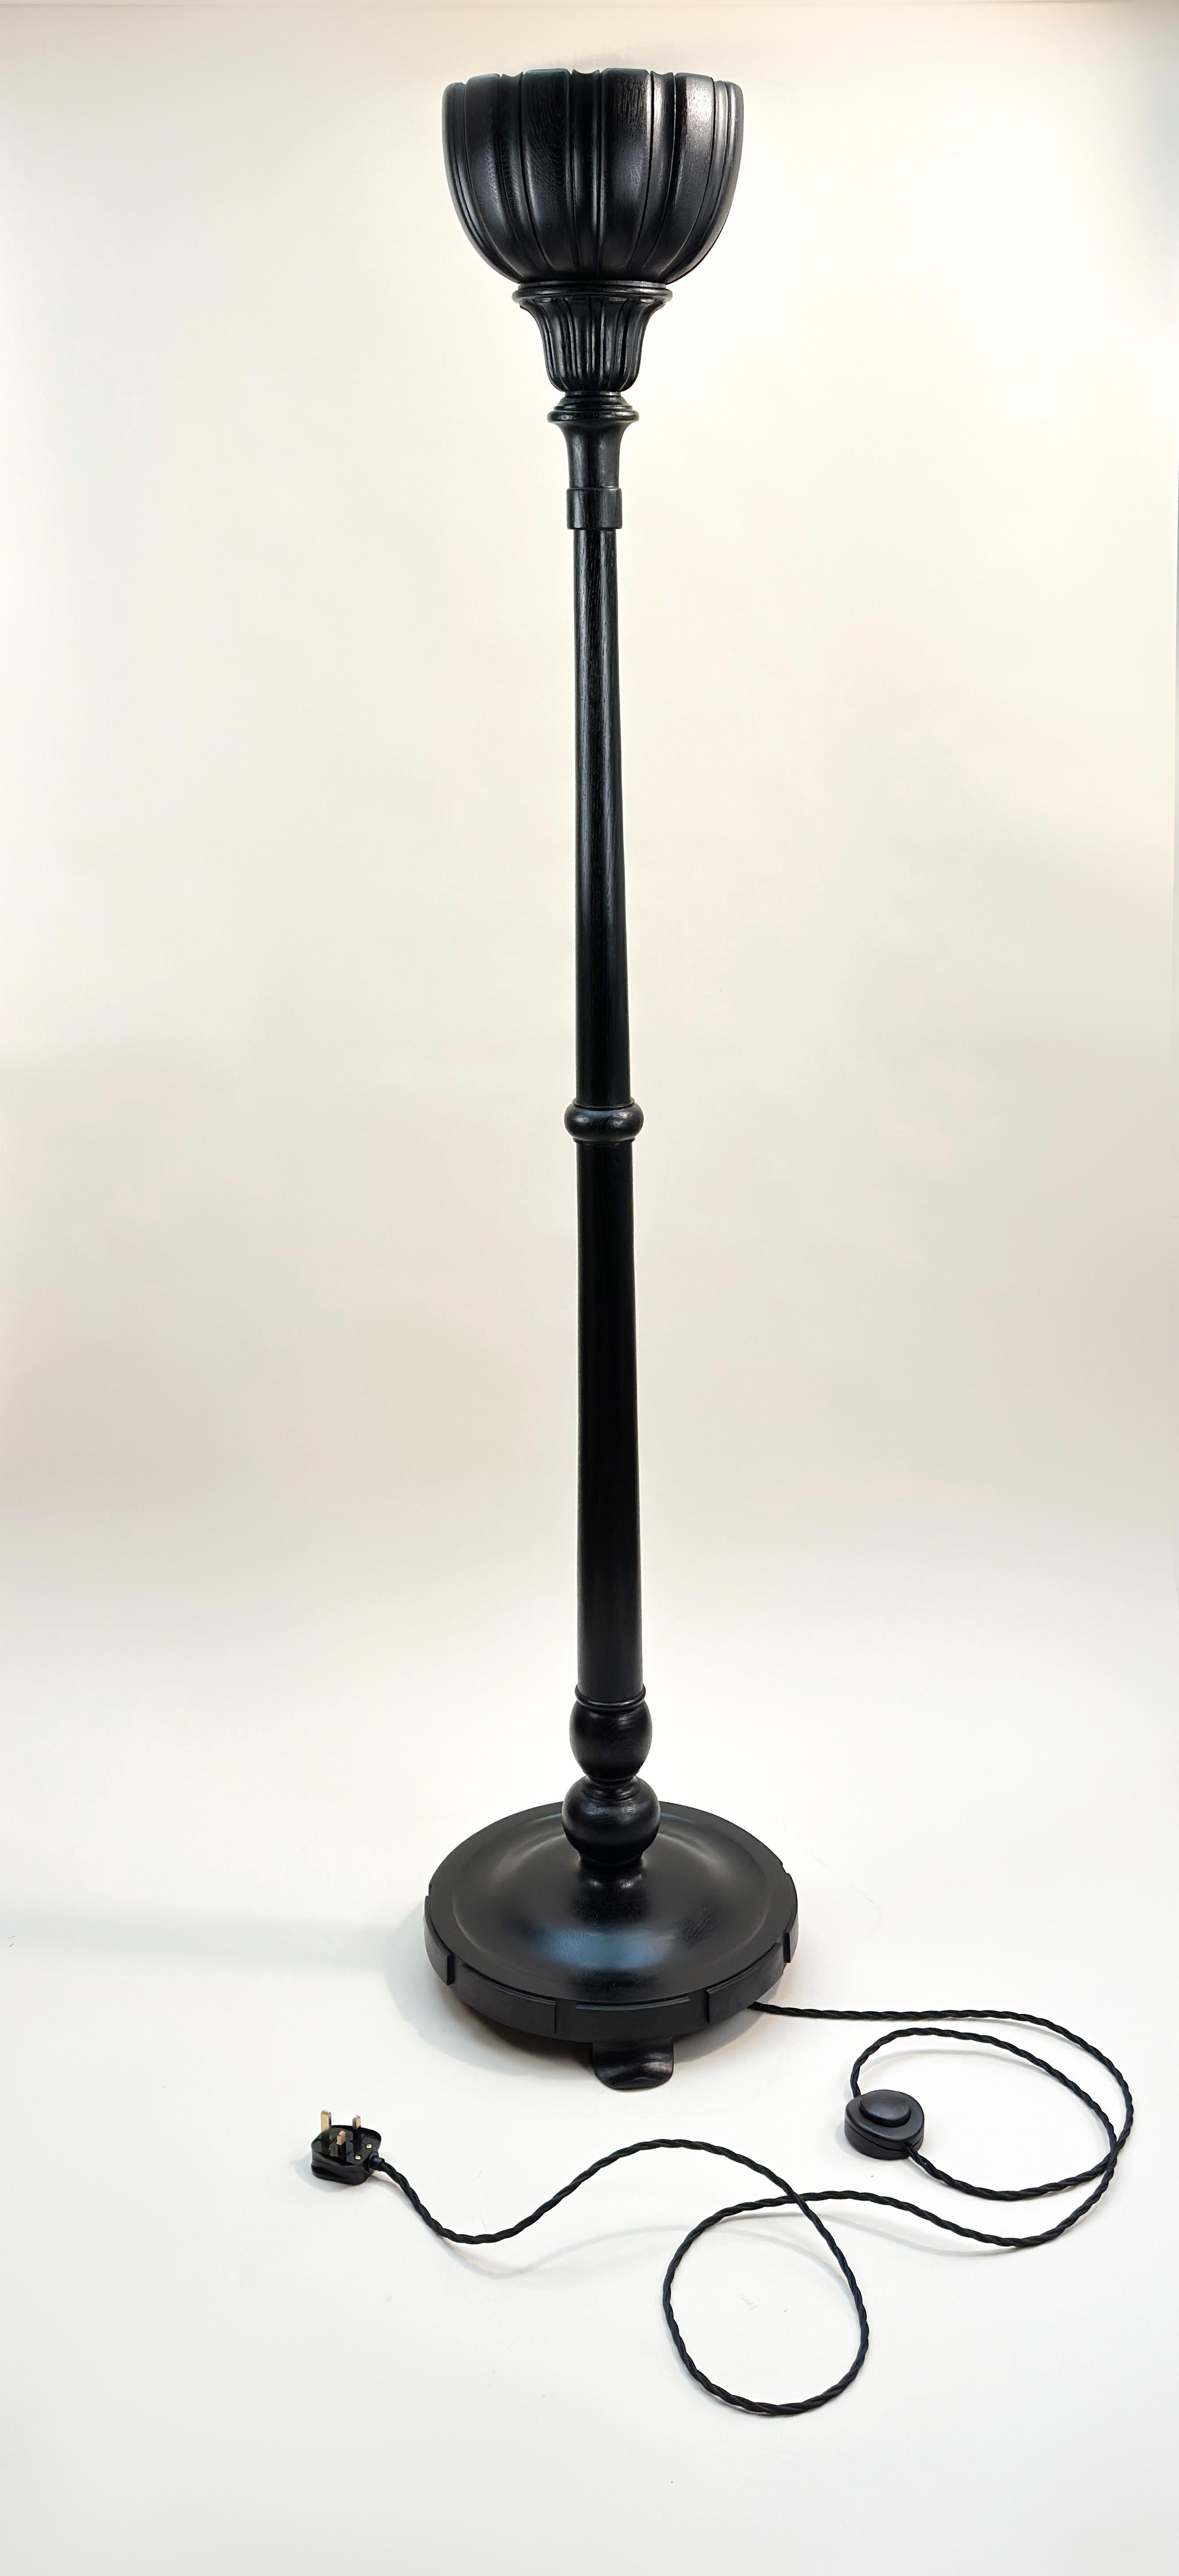 Viktorianische 'Torchere Style' Stehlampe

Diese viktorianische Stehlampe aus dem frühen 20. Jahrhundert wurde sorgfältig aus englischer Eiche gefertigt. Ursprünglich wurde er für den Einsatz in einer britischen Bank entworfen und verfügt über drei